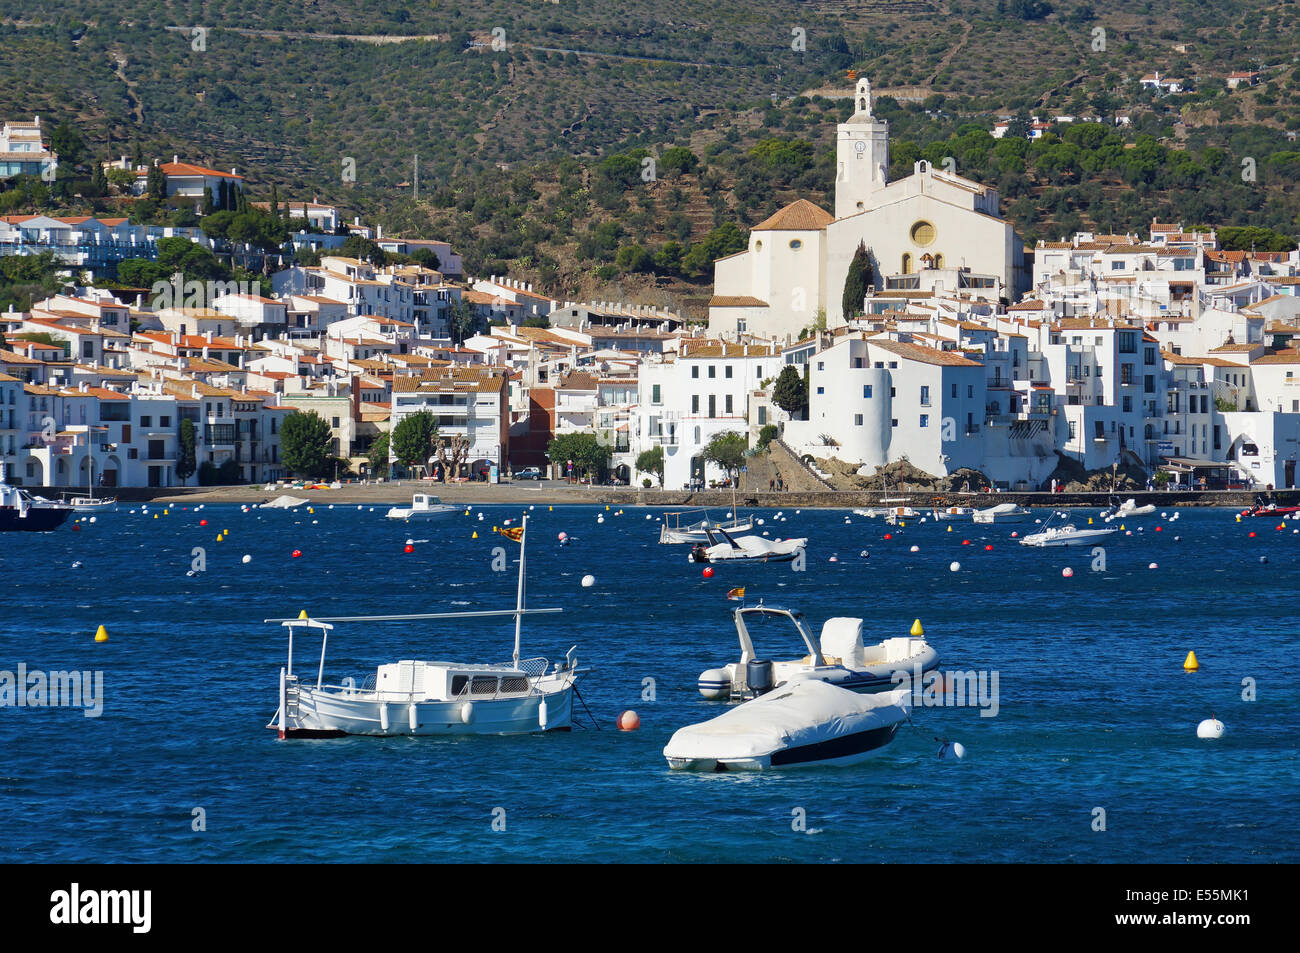 Dorf von Cadaques an der Mittelmeerküste mit Booten auf mooring Bojen im Vordergrund, Katalonien, Costa Brava, Spanien Stockfoto